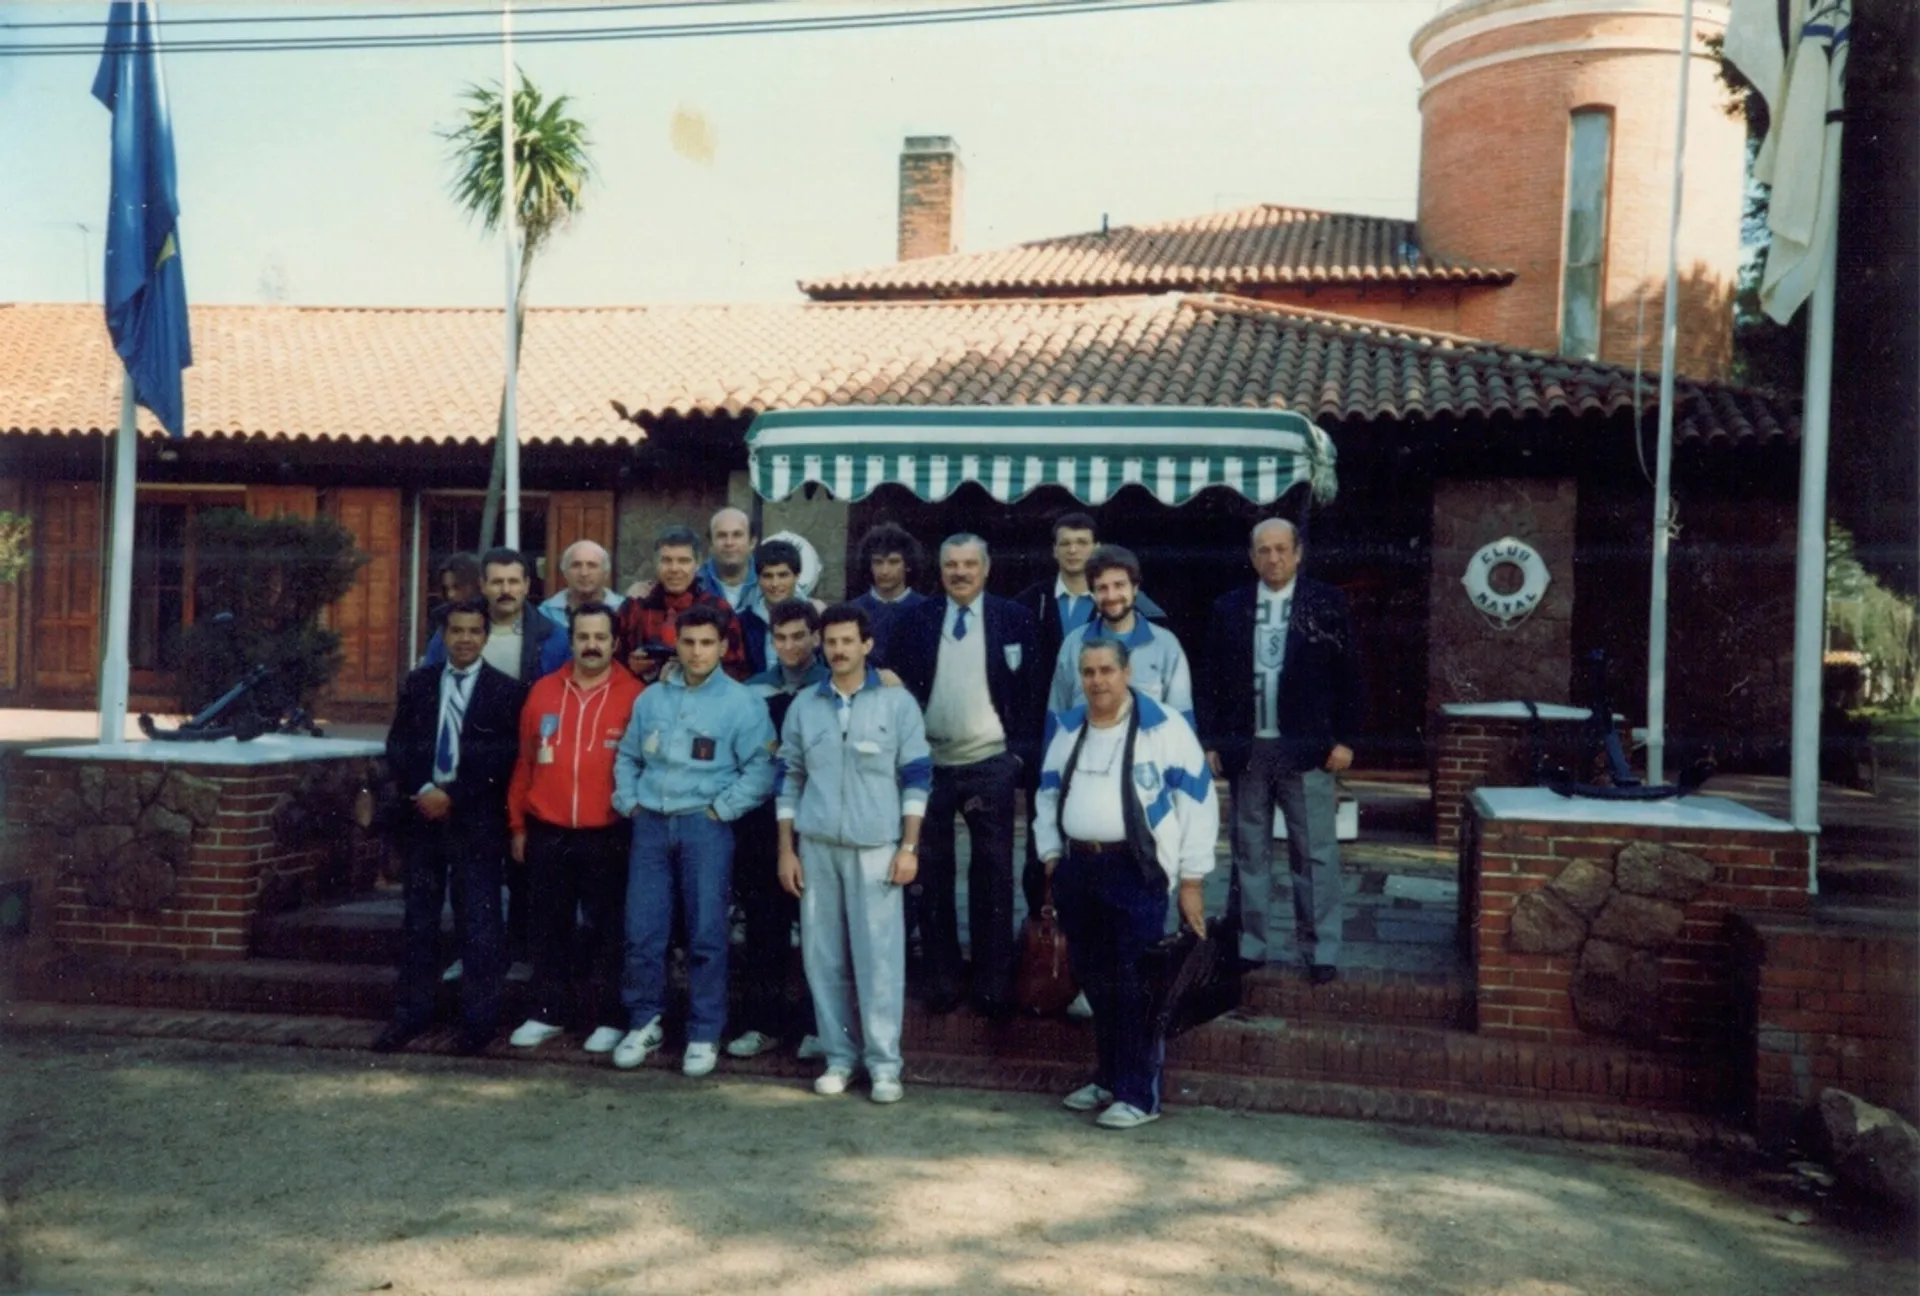 Equipo Nacional torneo rioplatense, Uruguay 1990